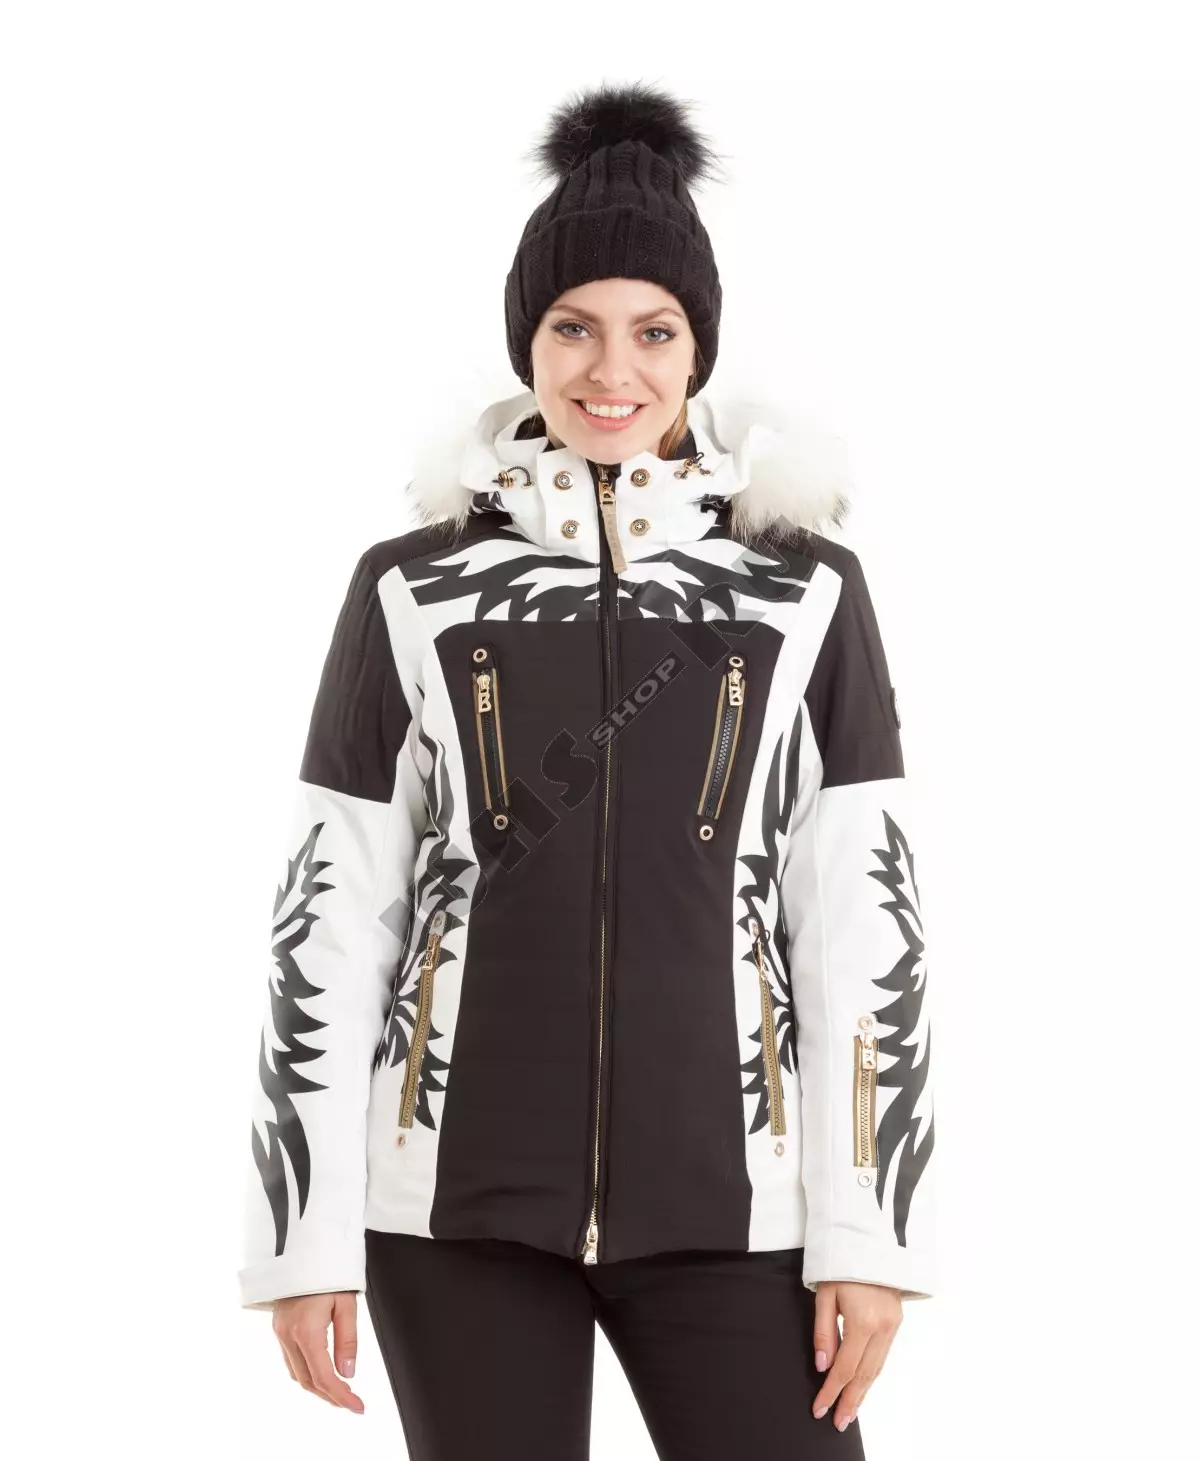 스키 재킷 : 크로스 컨트리 스키 여성 겨울 자켓, 워밍업 어린이와 성인 스키 재킷. 스케이팅을 선택하는 방법은 무엇입니까? 20201_32